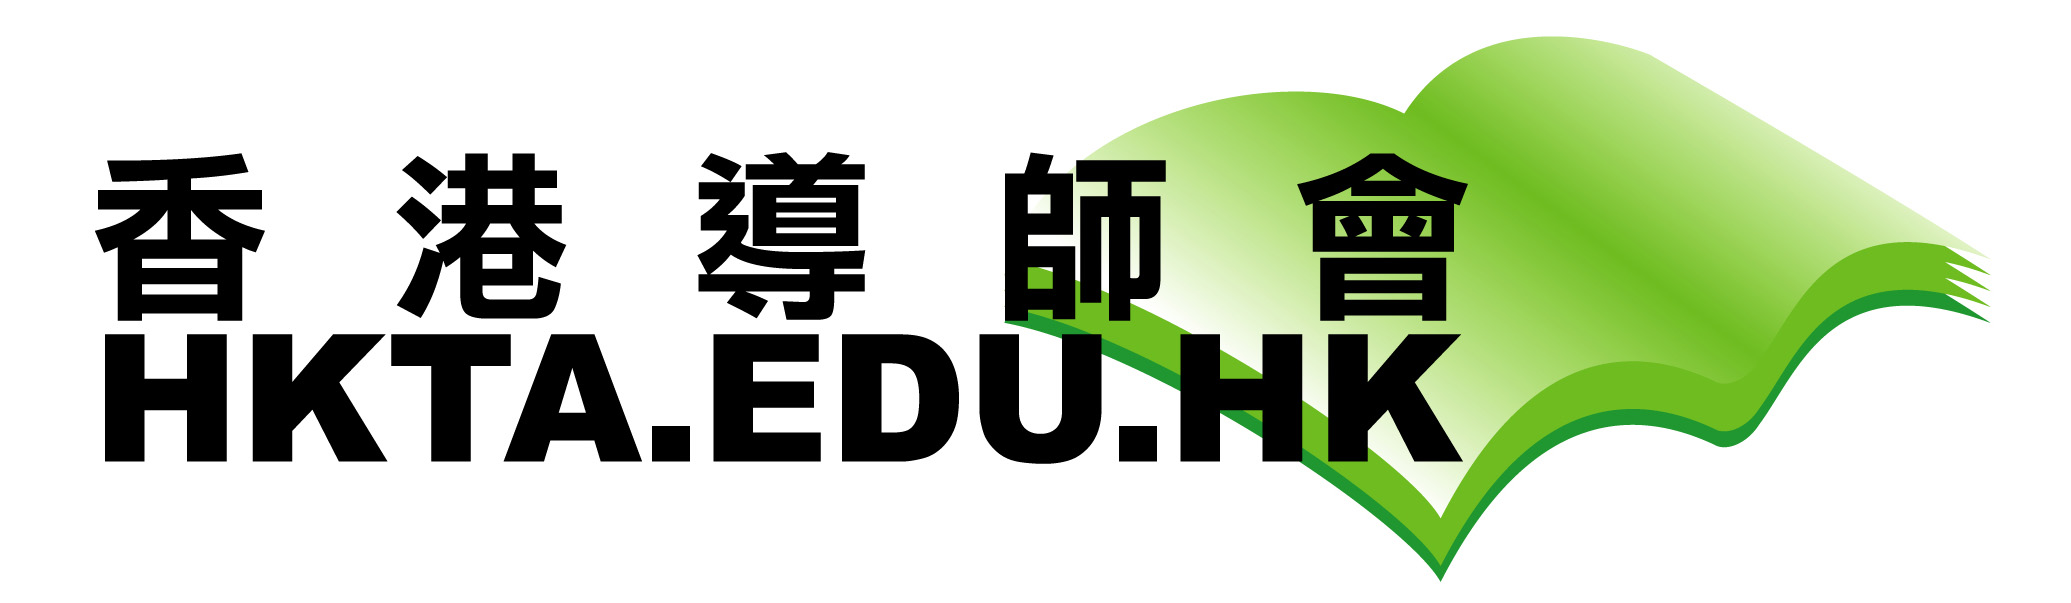  香港導師會-私人一對一專業教學(www.hkta.edu.hk)，8226 0008註冊上門補習機構